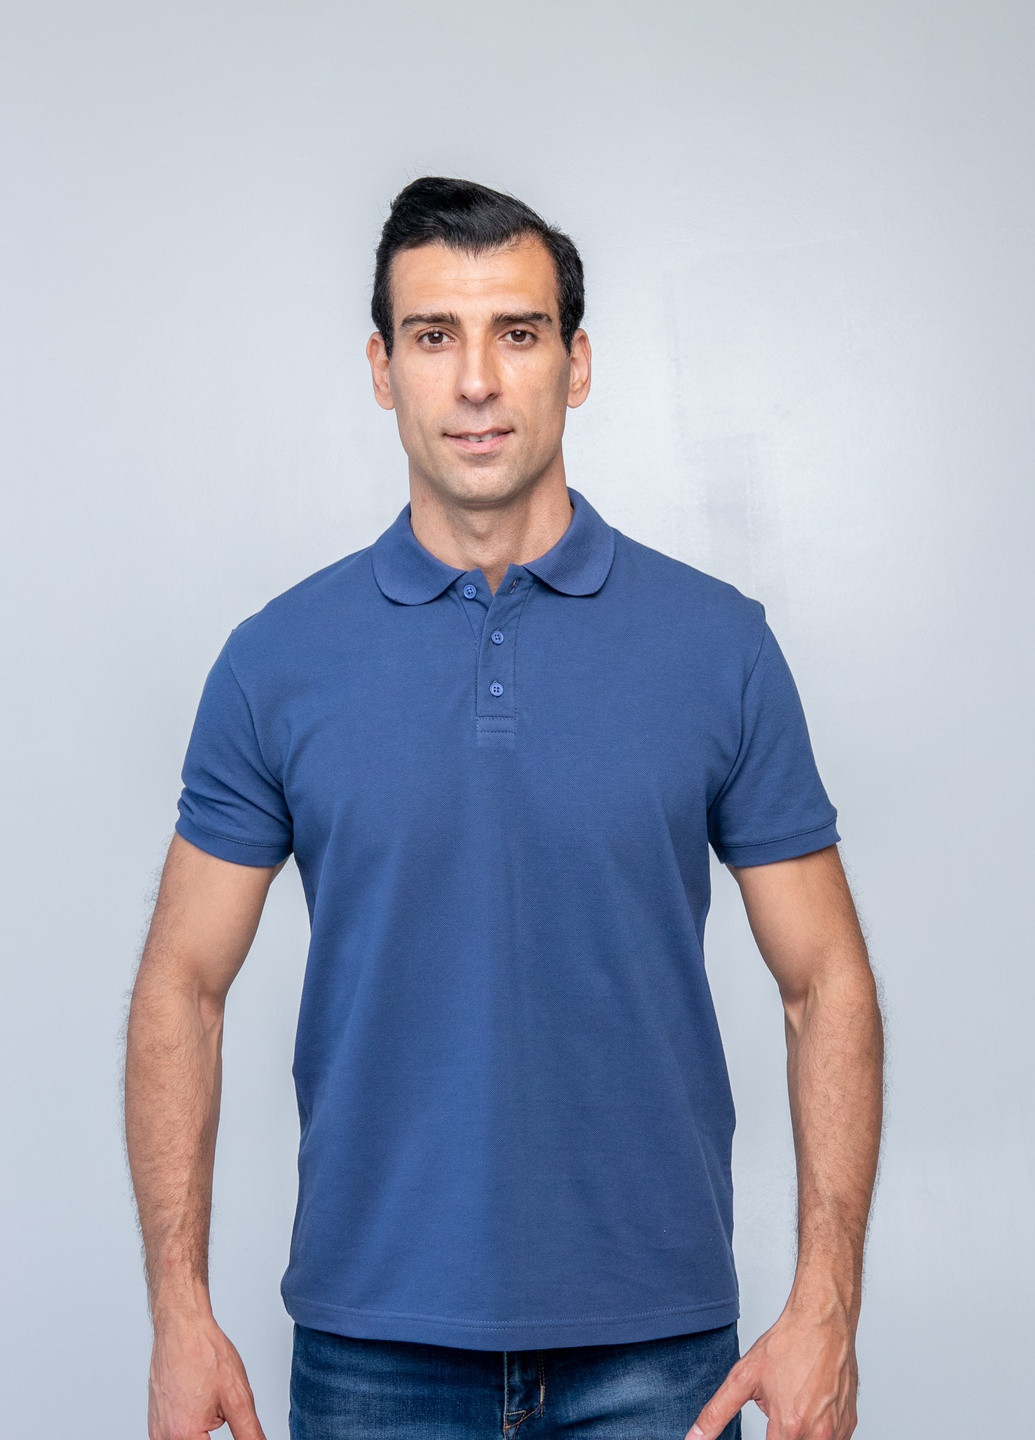 Синяя футболка-футболка поло чоловіча для мужчин TvoePolo однотонная